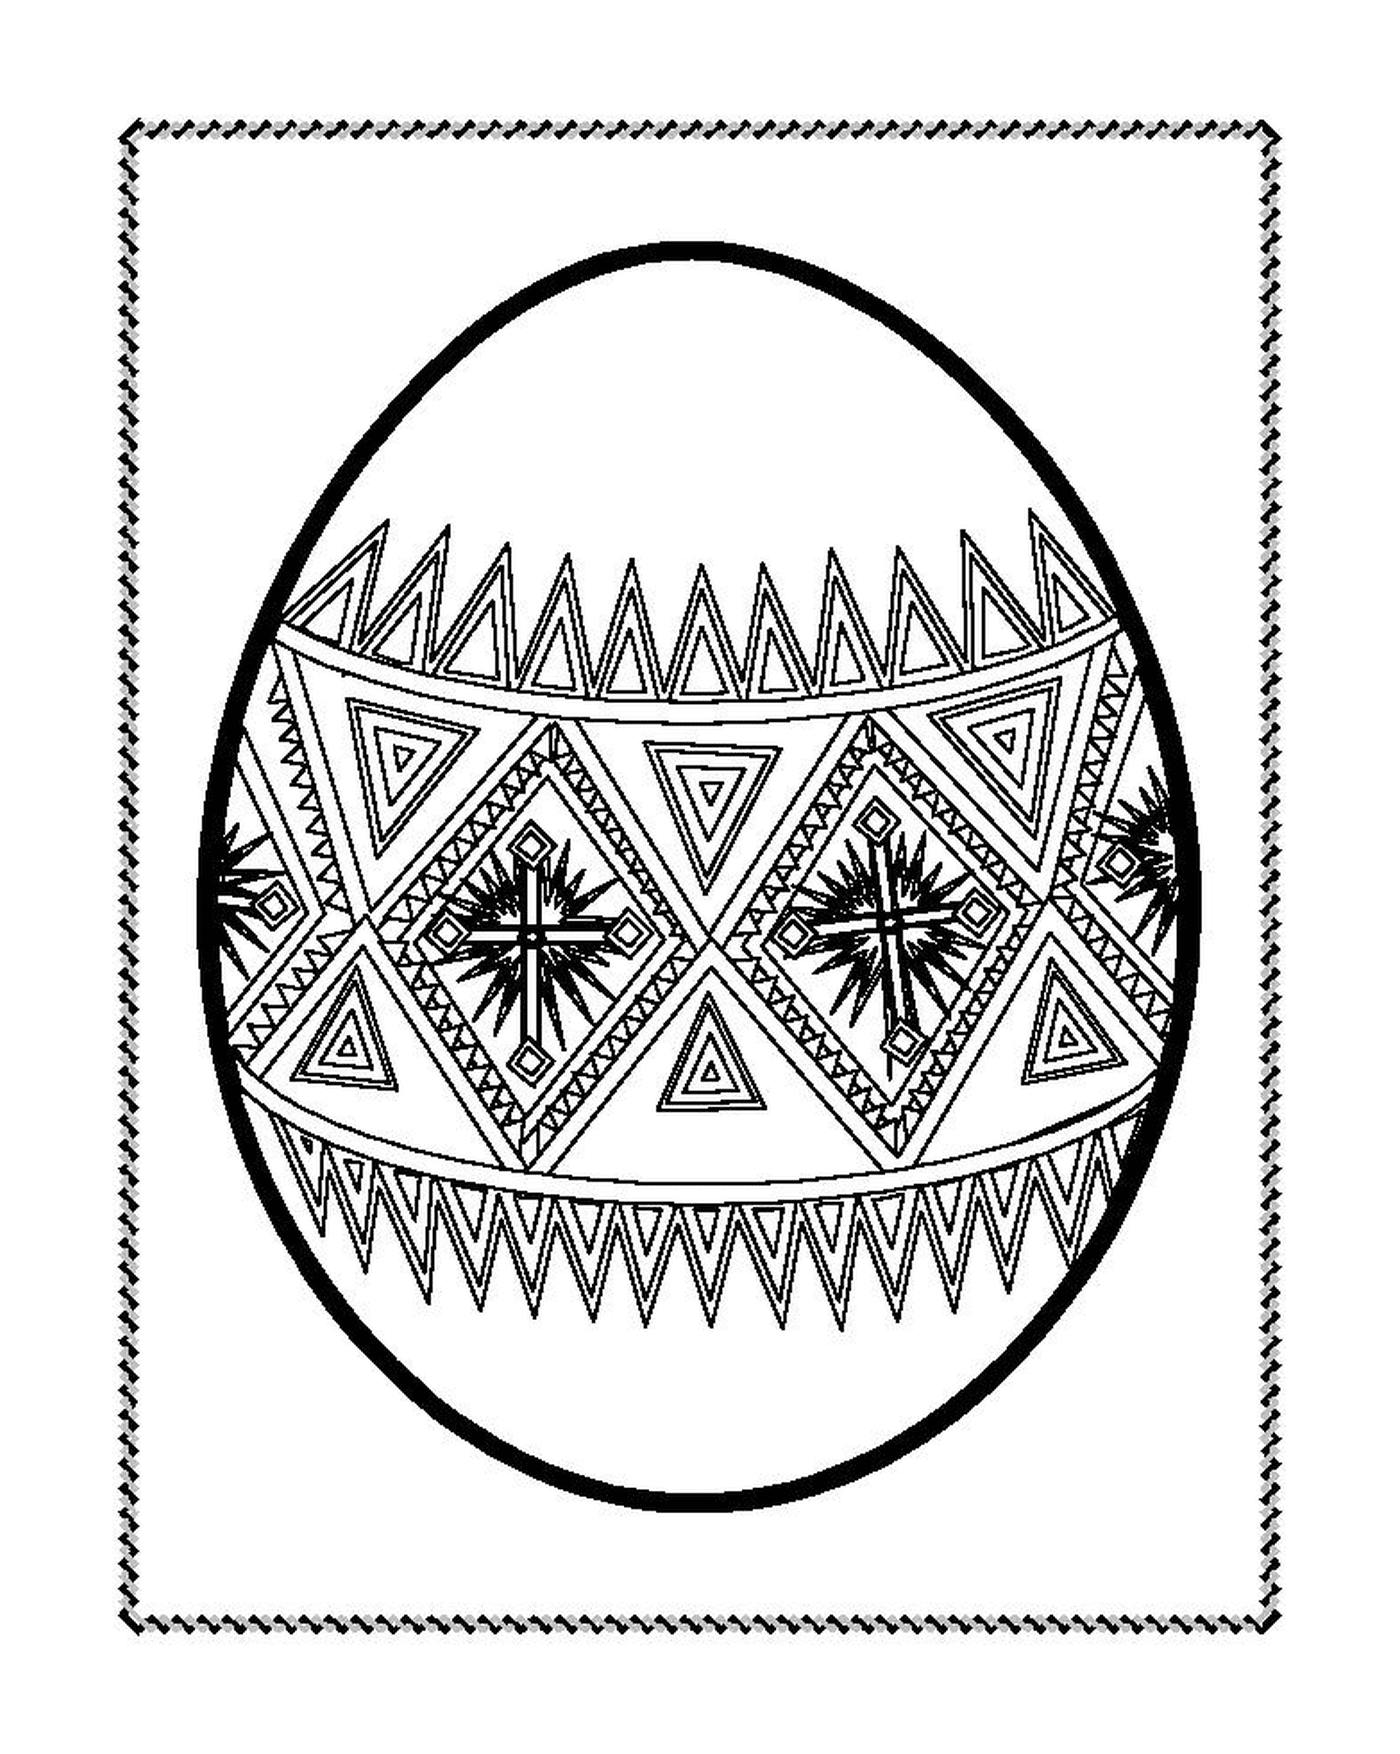  Un uovo di Pasqua decorato con motivi geometrici 